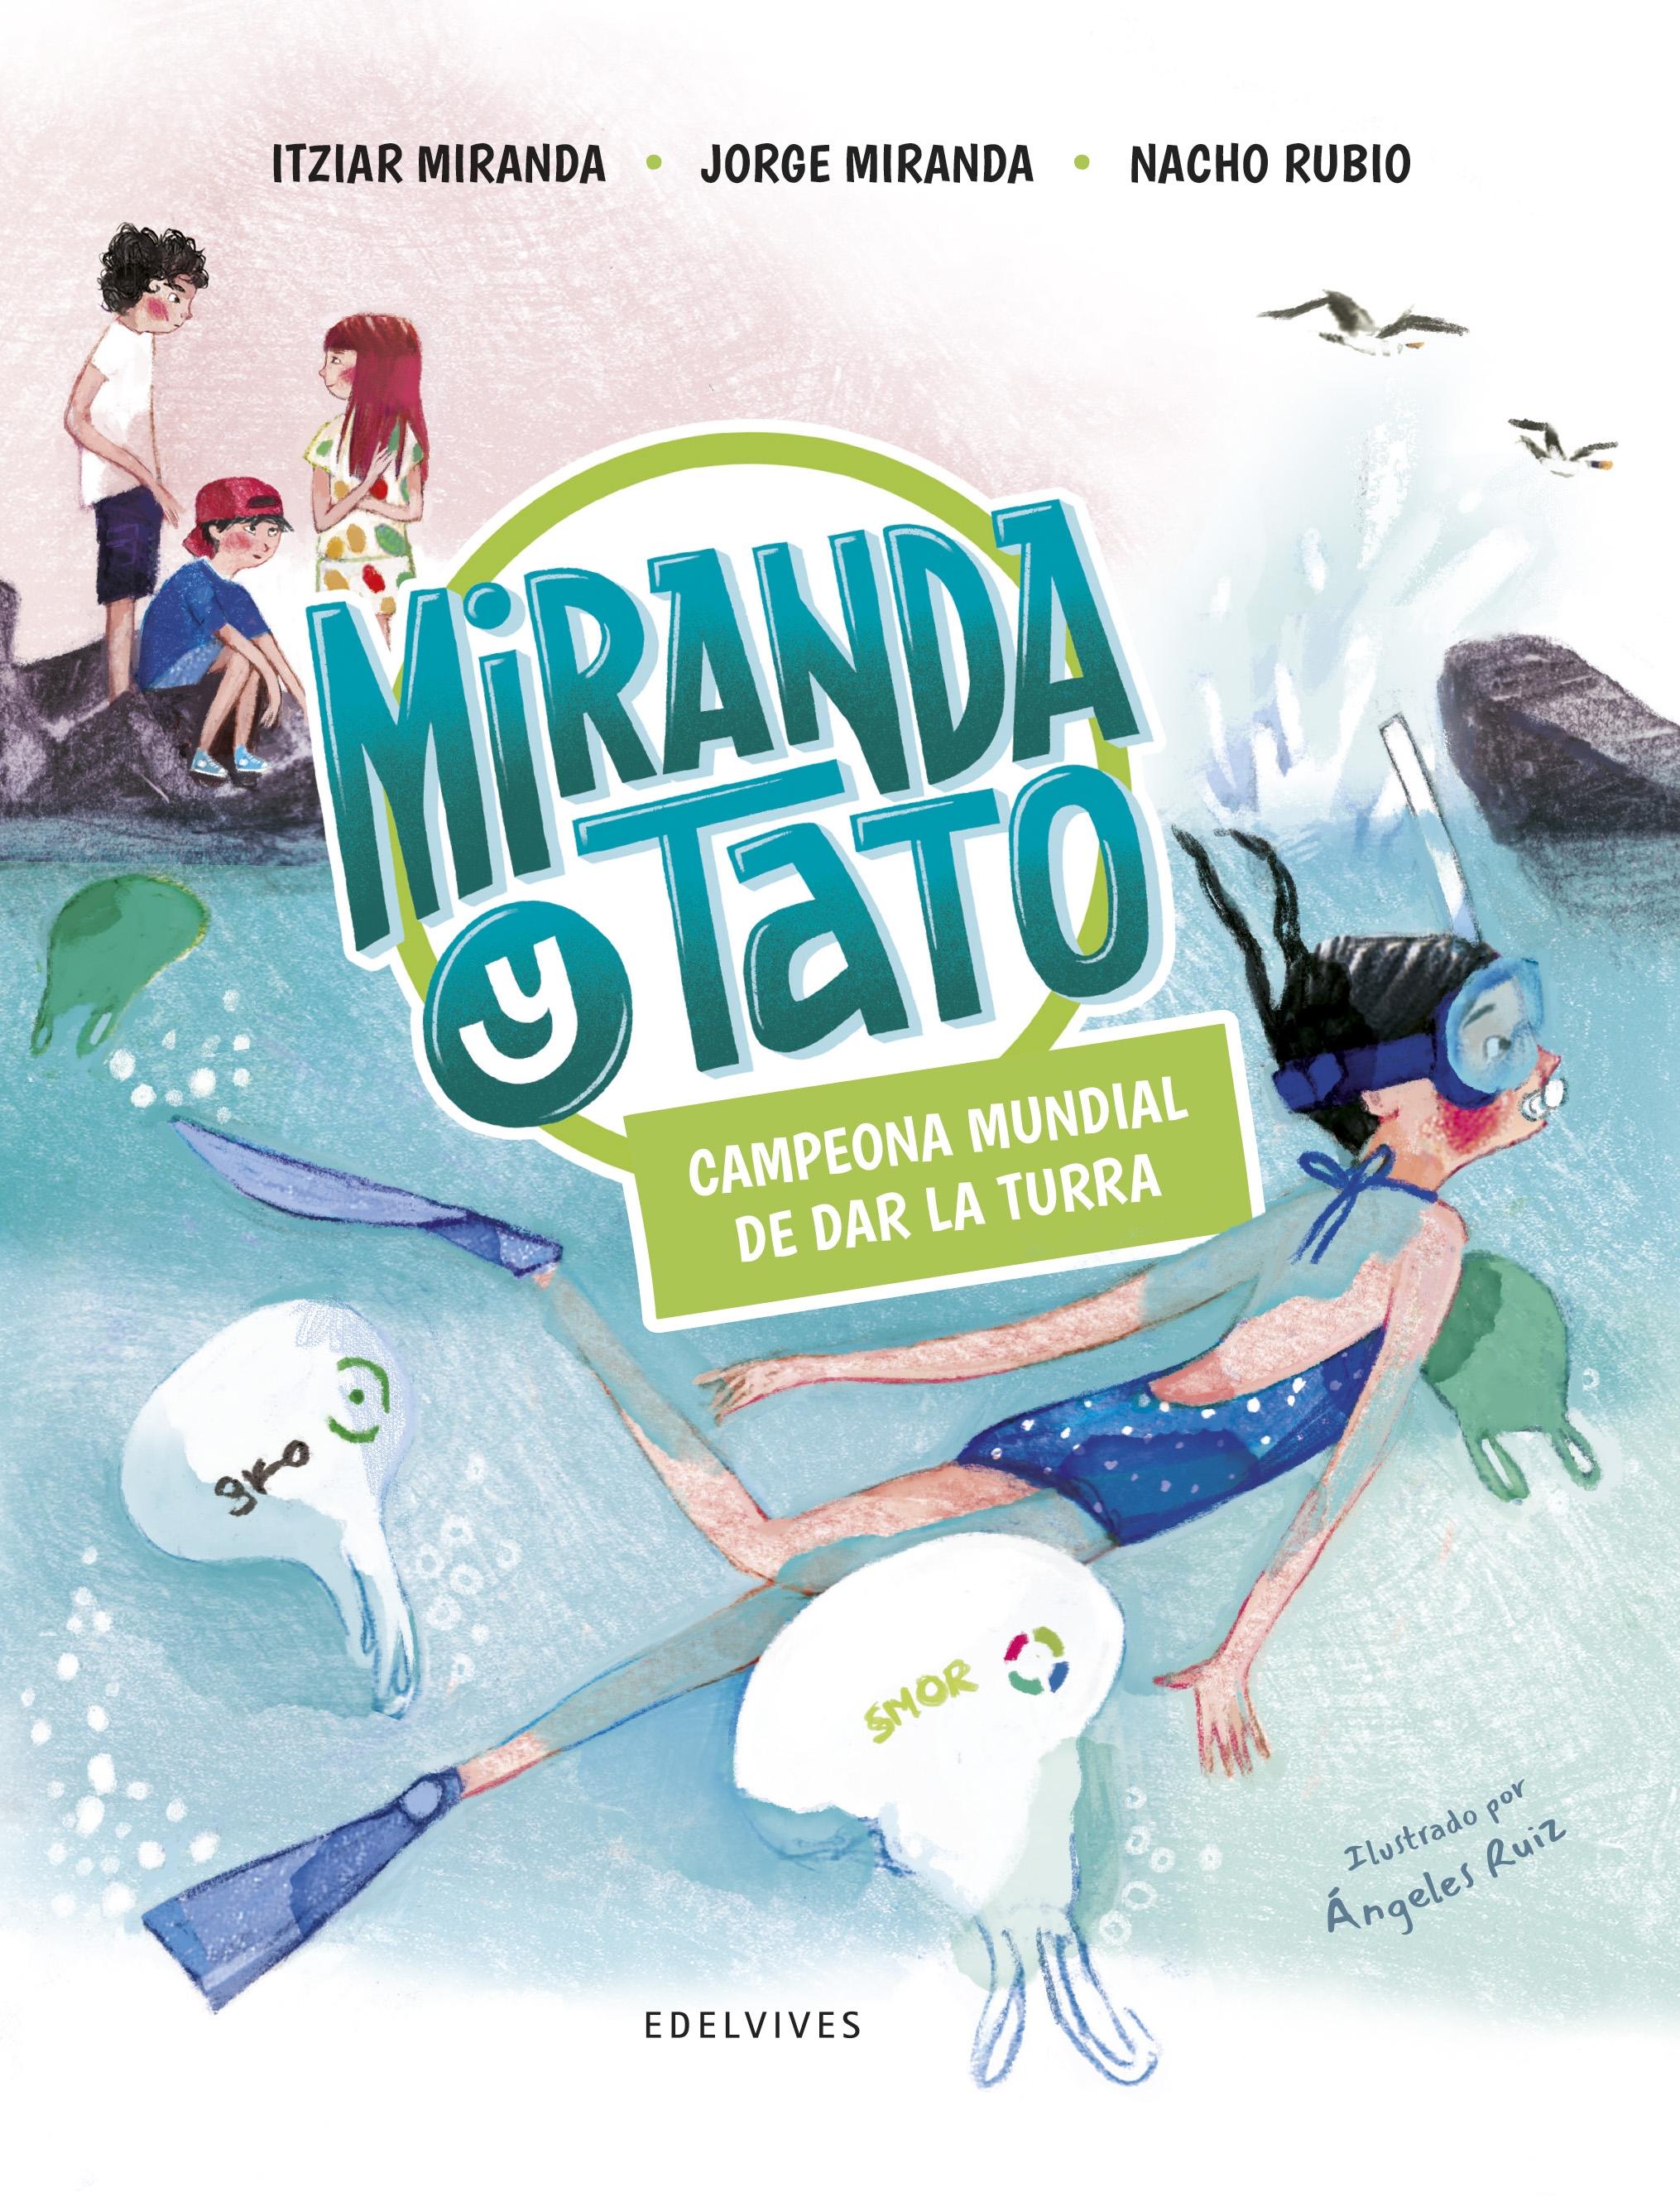 Miranda y Tato 5 "Campeona mundial de dar la turra"